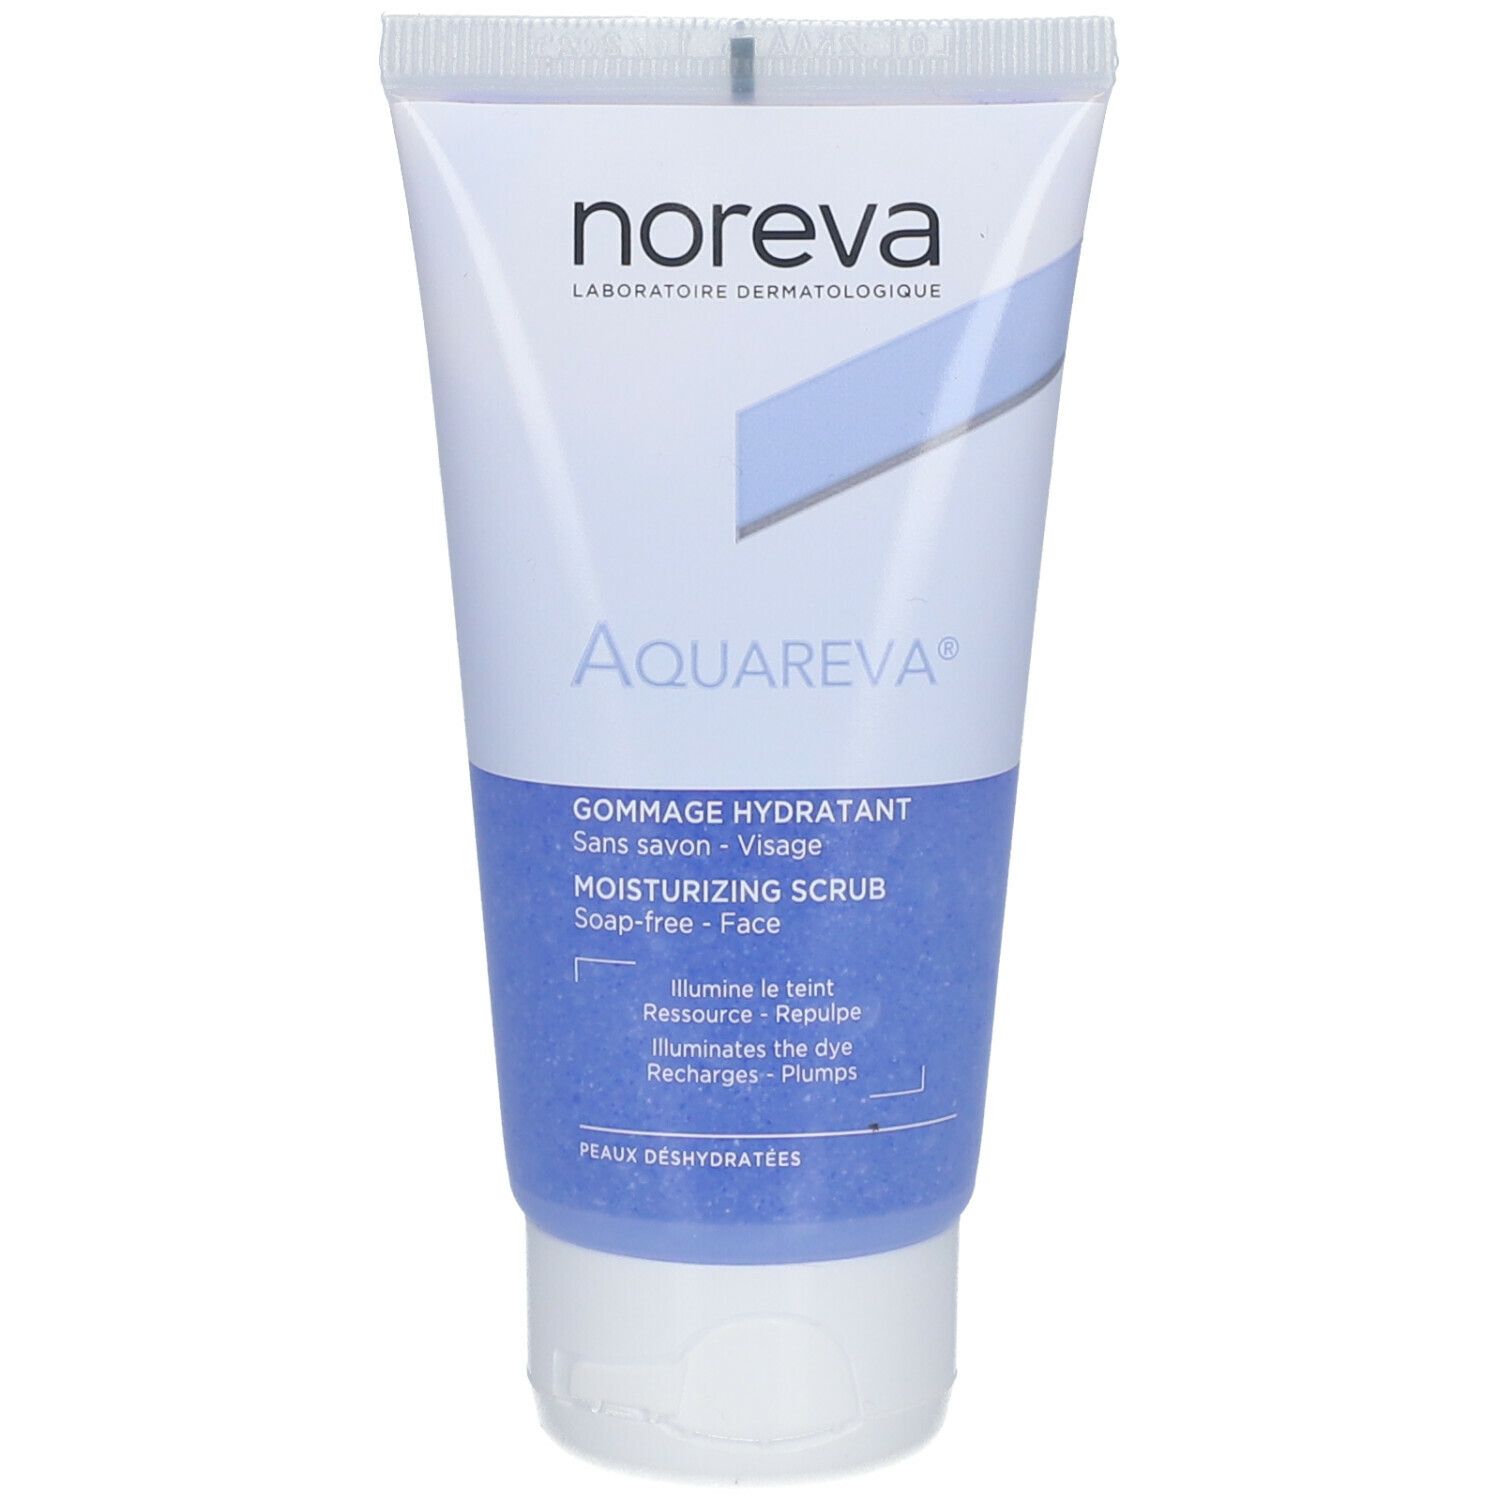 noreva Aquareva® Gommage hydratant